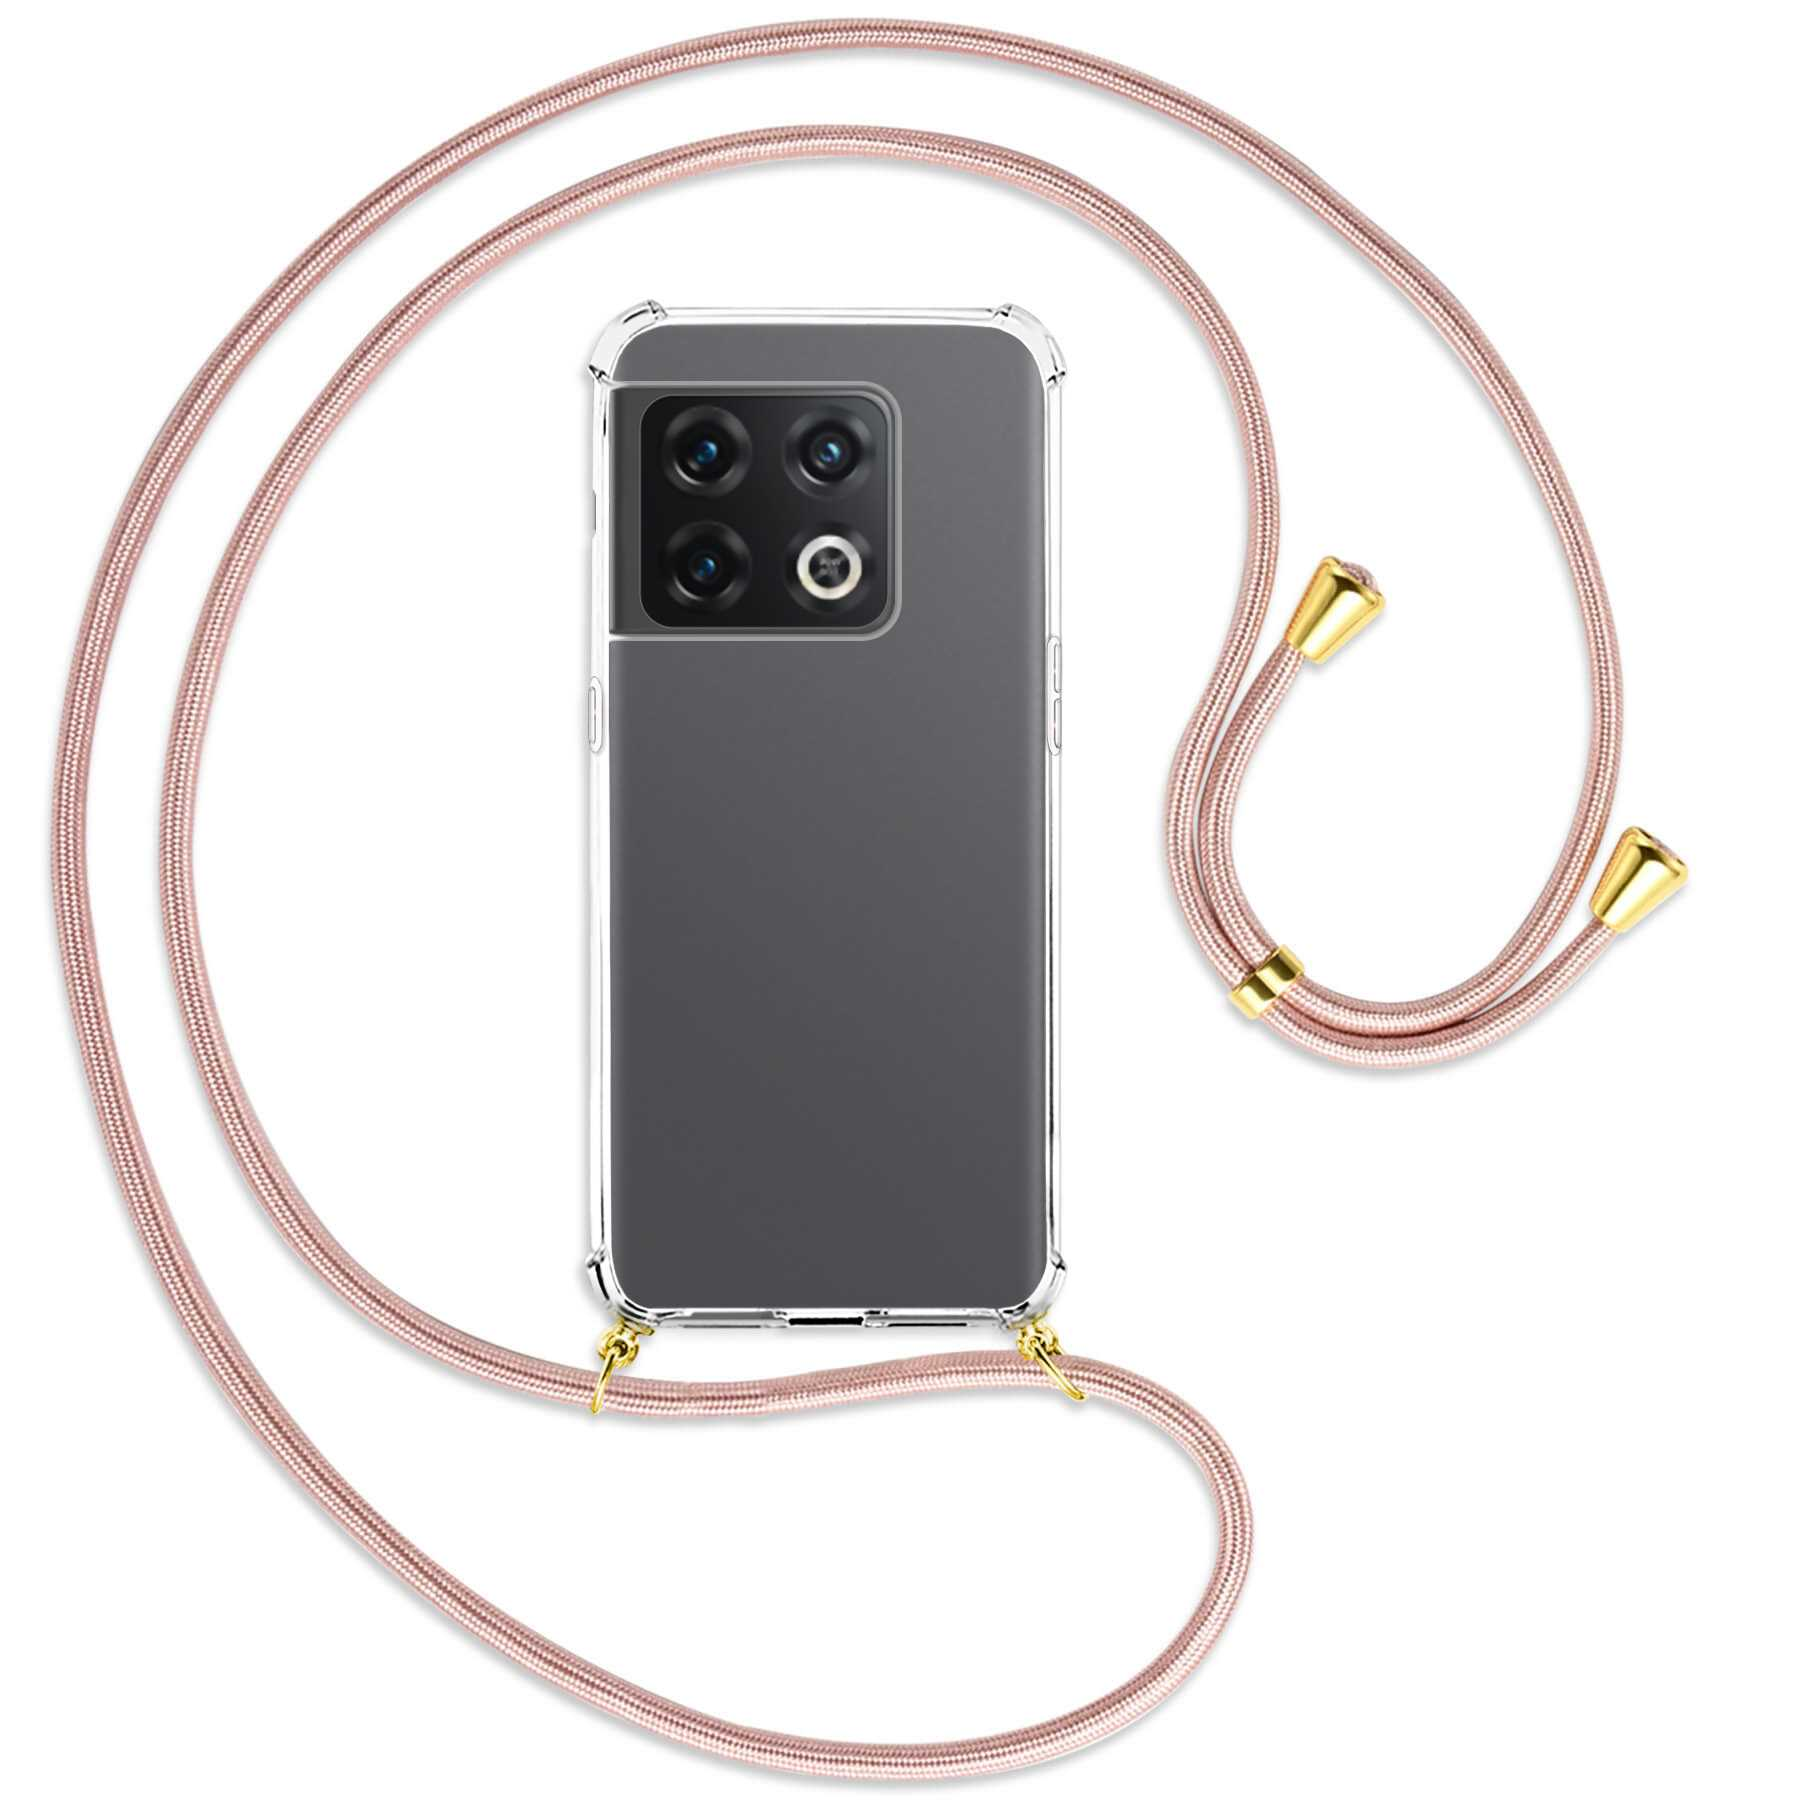 MTB MORE ENERGY OnePlus, Umhänge-Hülle Rosegold mit Backcover, Gold Pro Kordel, 10 / 5G